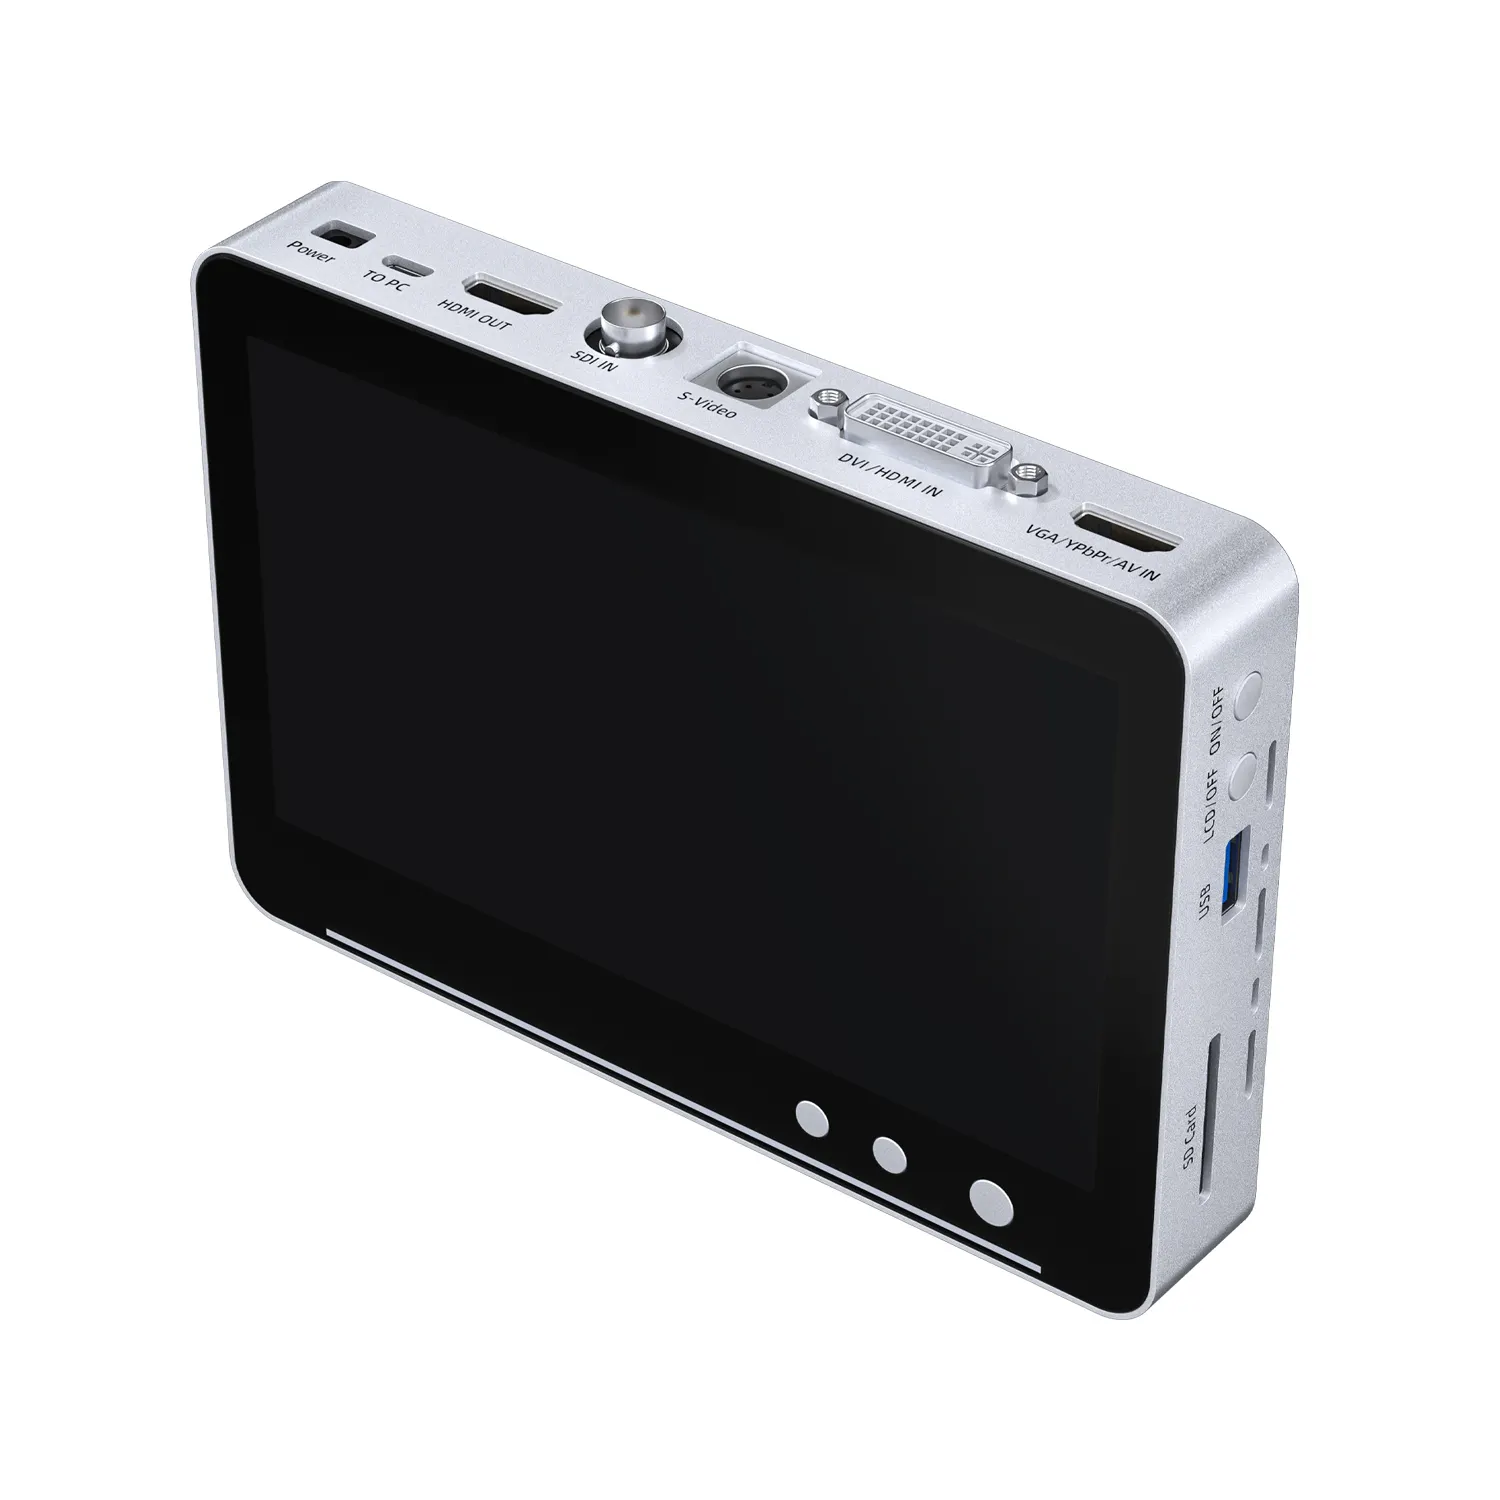 กล้องบันทึกวิดีโอ UR550แบบสแตนด์อโลนอุปกรณ์บันทึกวิดีโอ SDI VGA DVI HDMI YPbPr RCA กล้องบันทึกกล่องจับภาพ4K